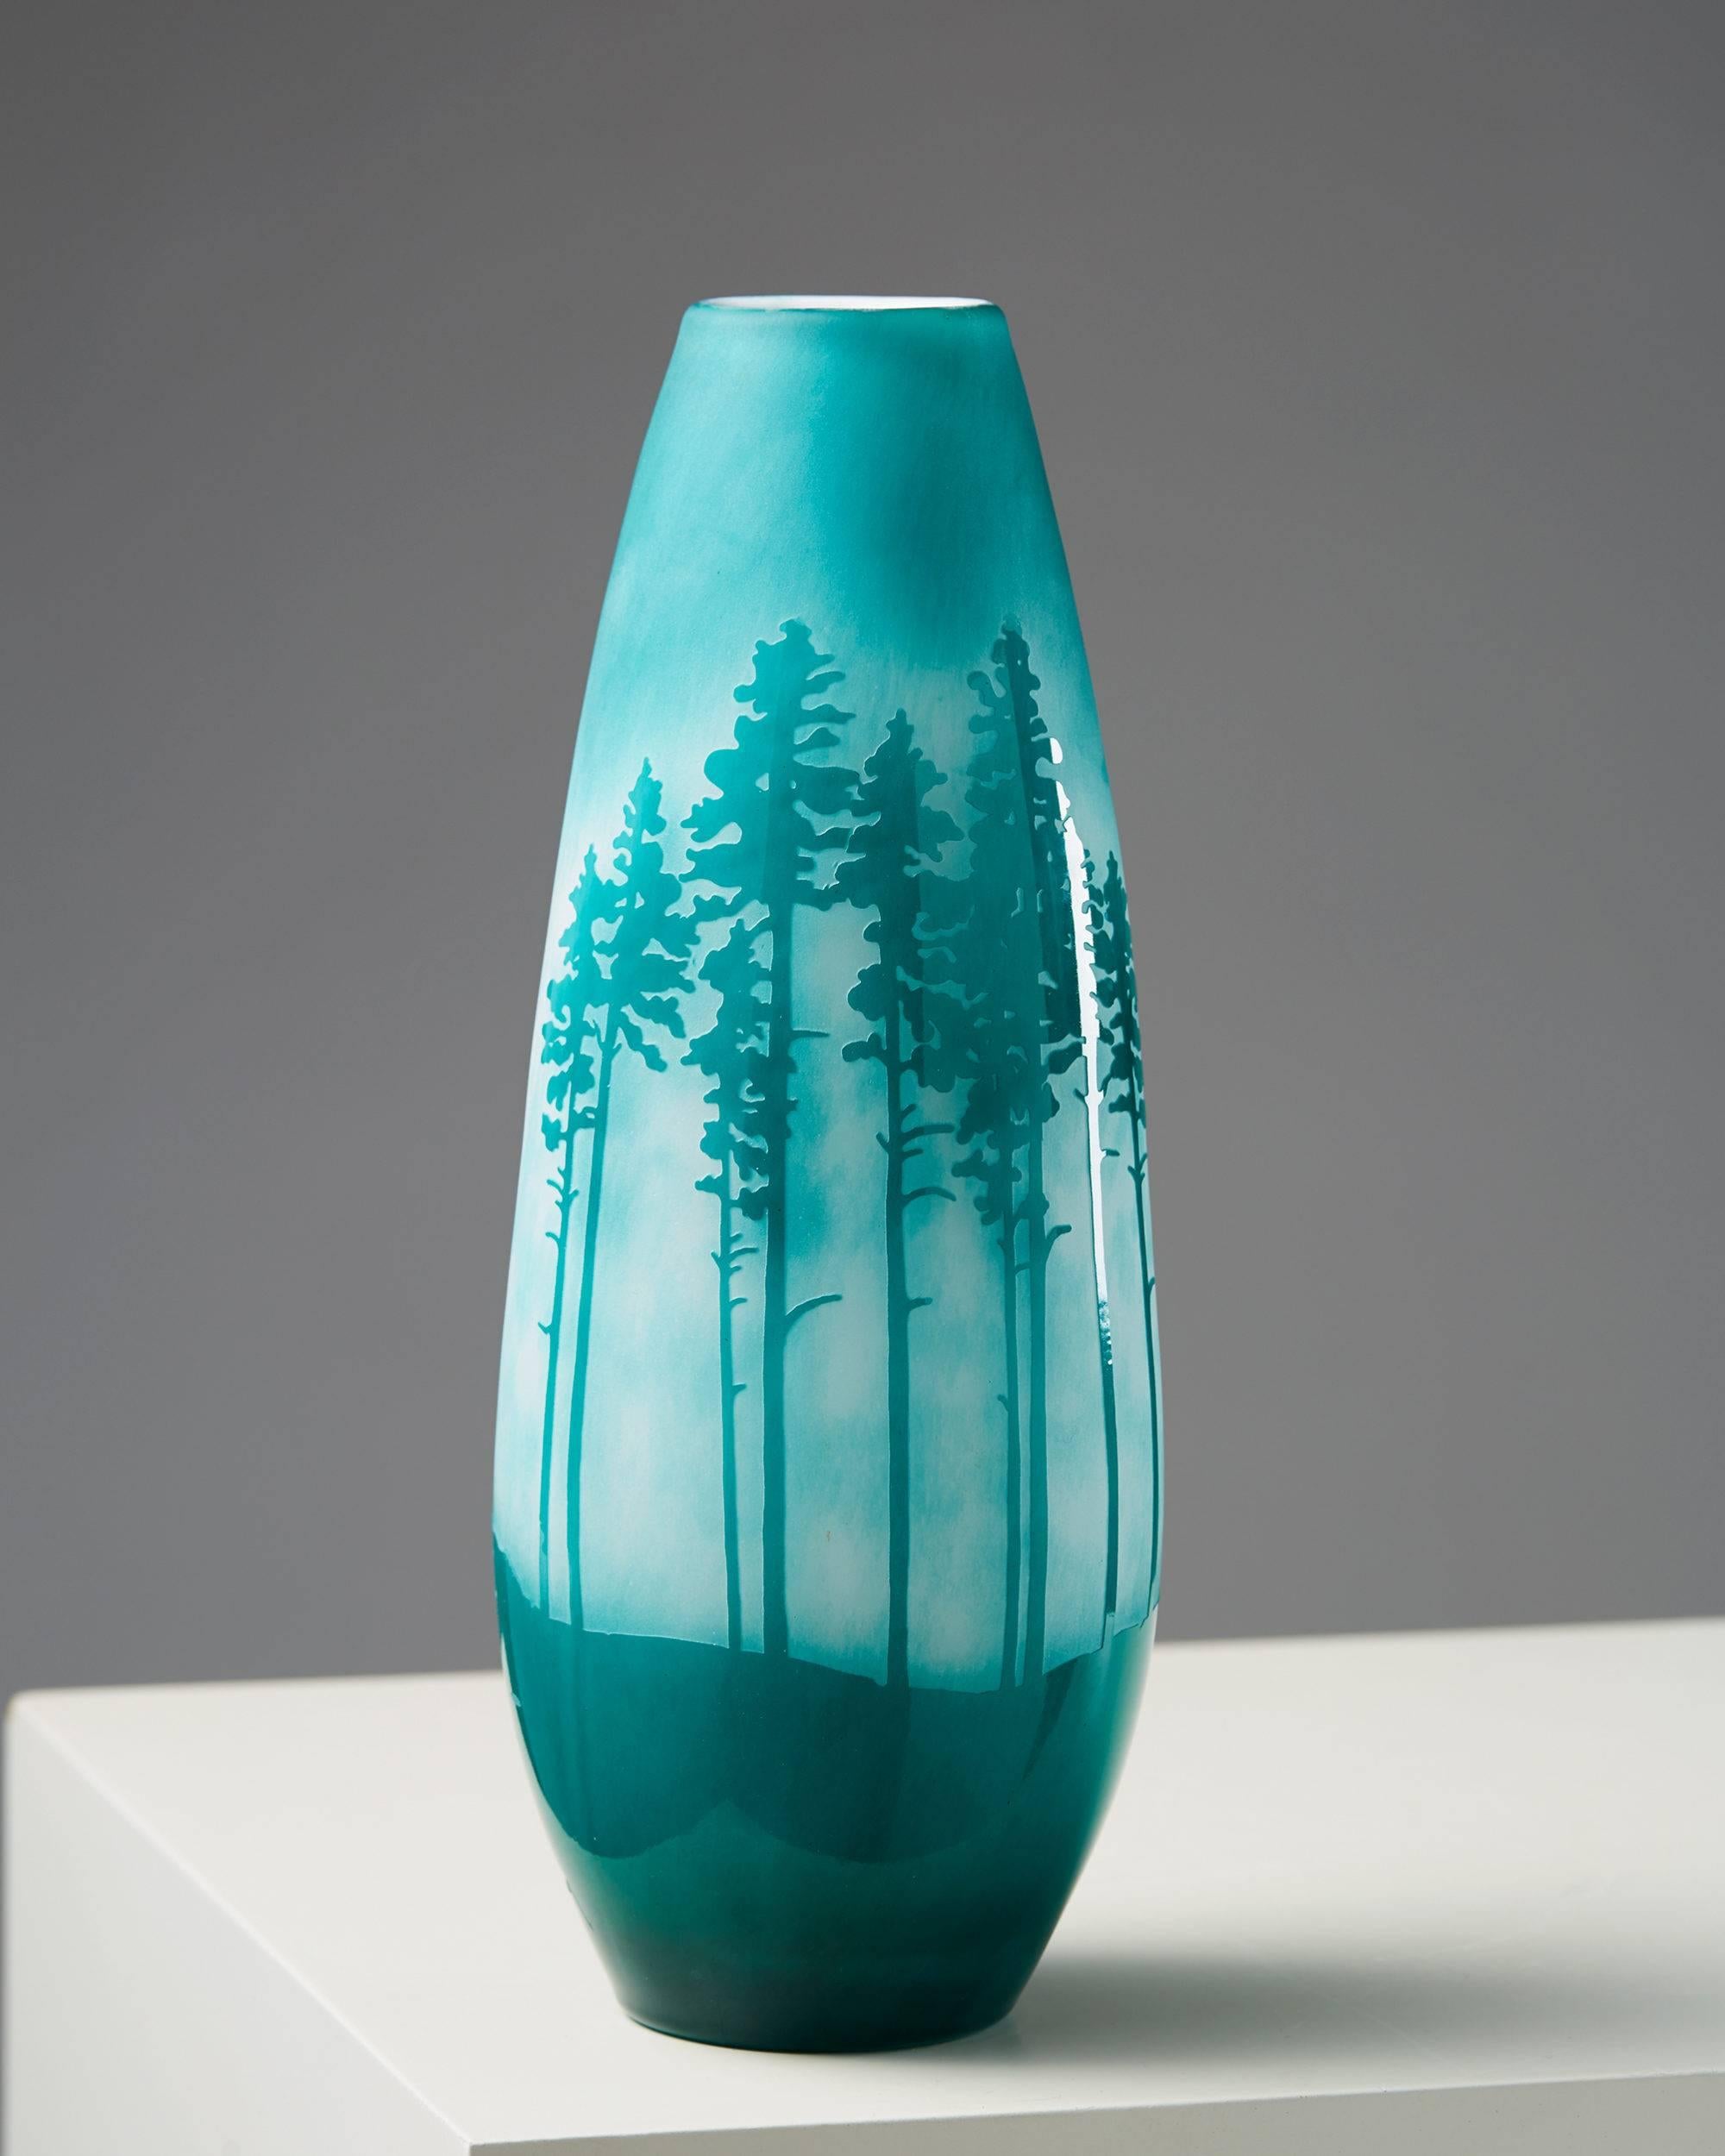 Vase designed by Sissi Westerberg for Reijmyre, Sweden, 2017.

Measures: H 28 cm/ 11